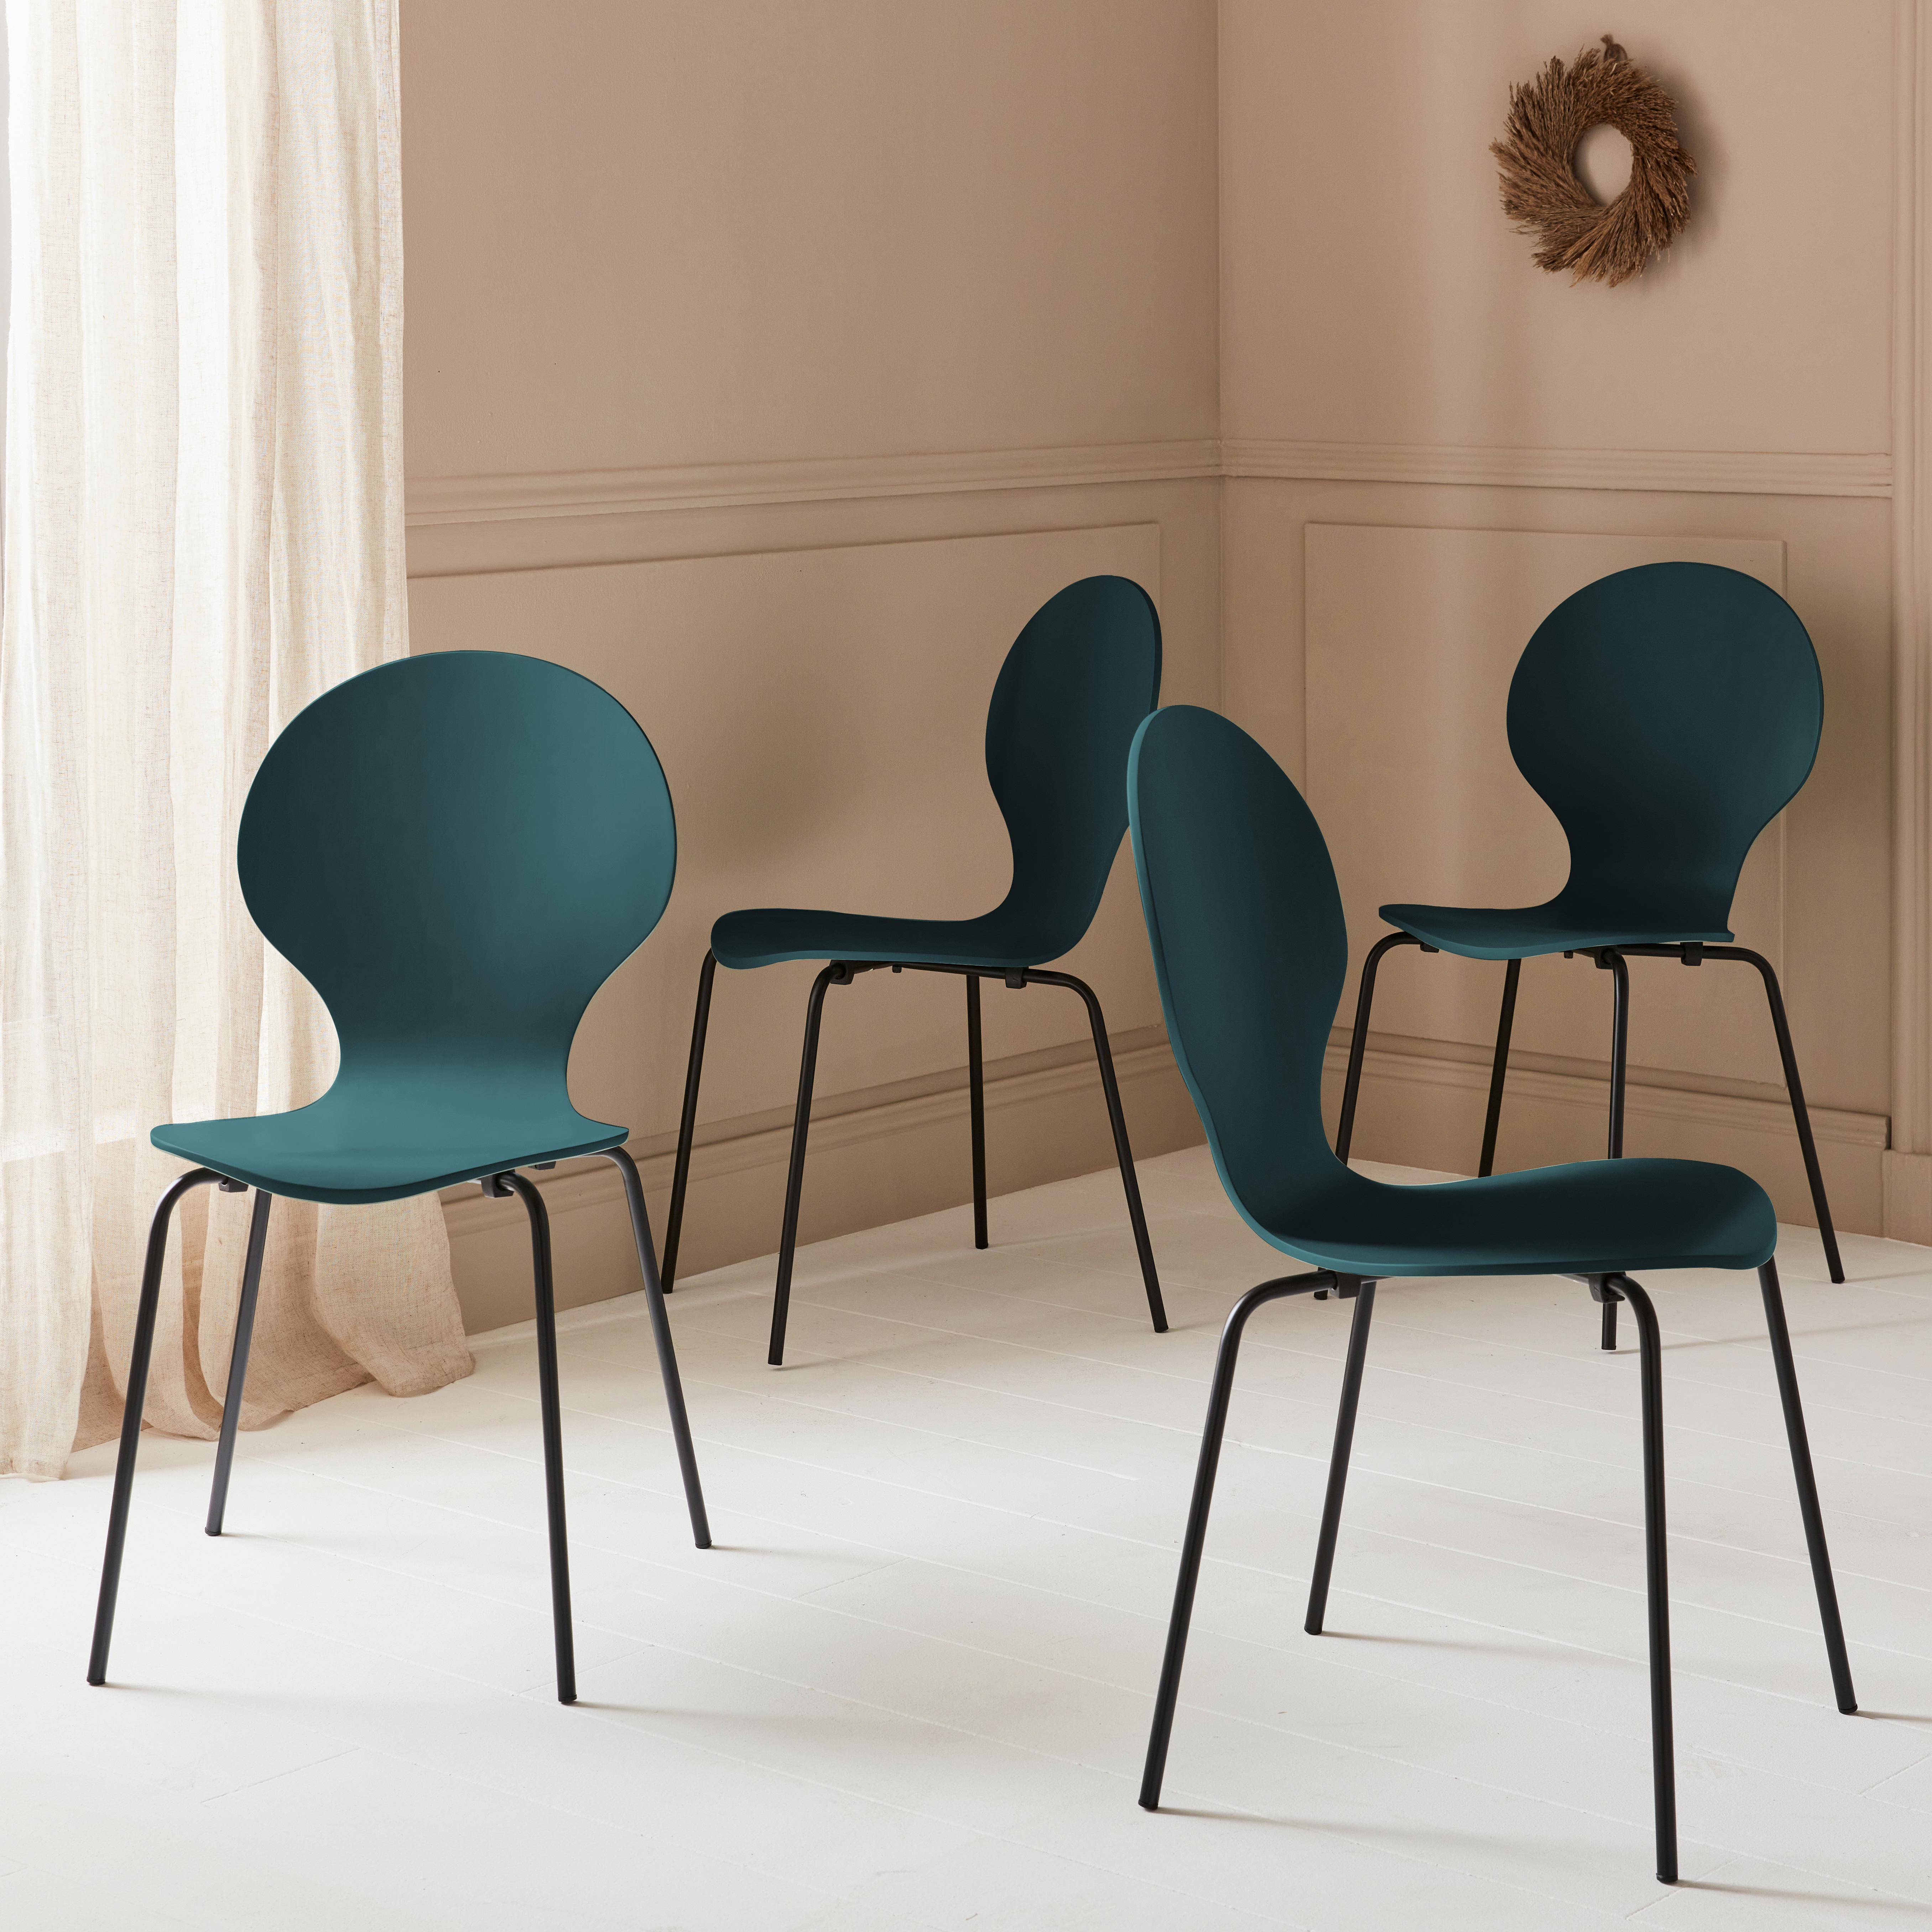 Lot de 4 chaises bleues, rétro empilables, bois d'hévéa et contreplaqué, pieds en acier, Naomi, L 43 x P 48 x H 87cm,sweeek,Photo2